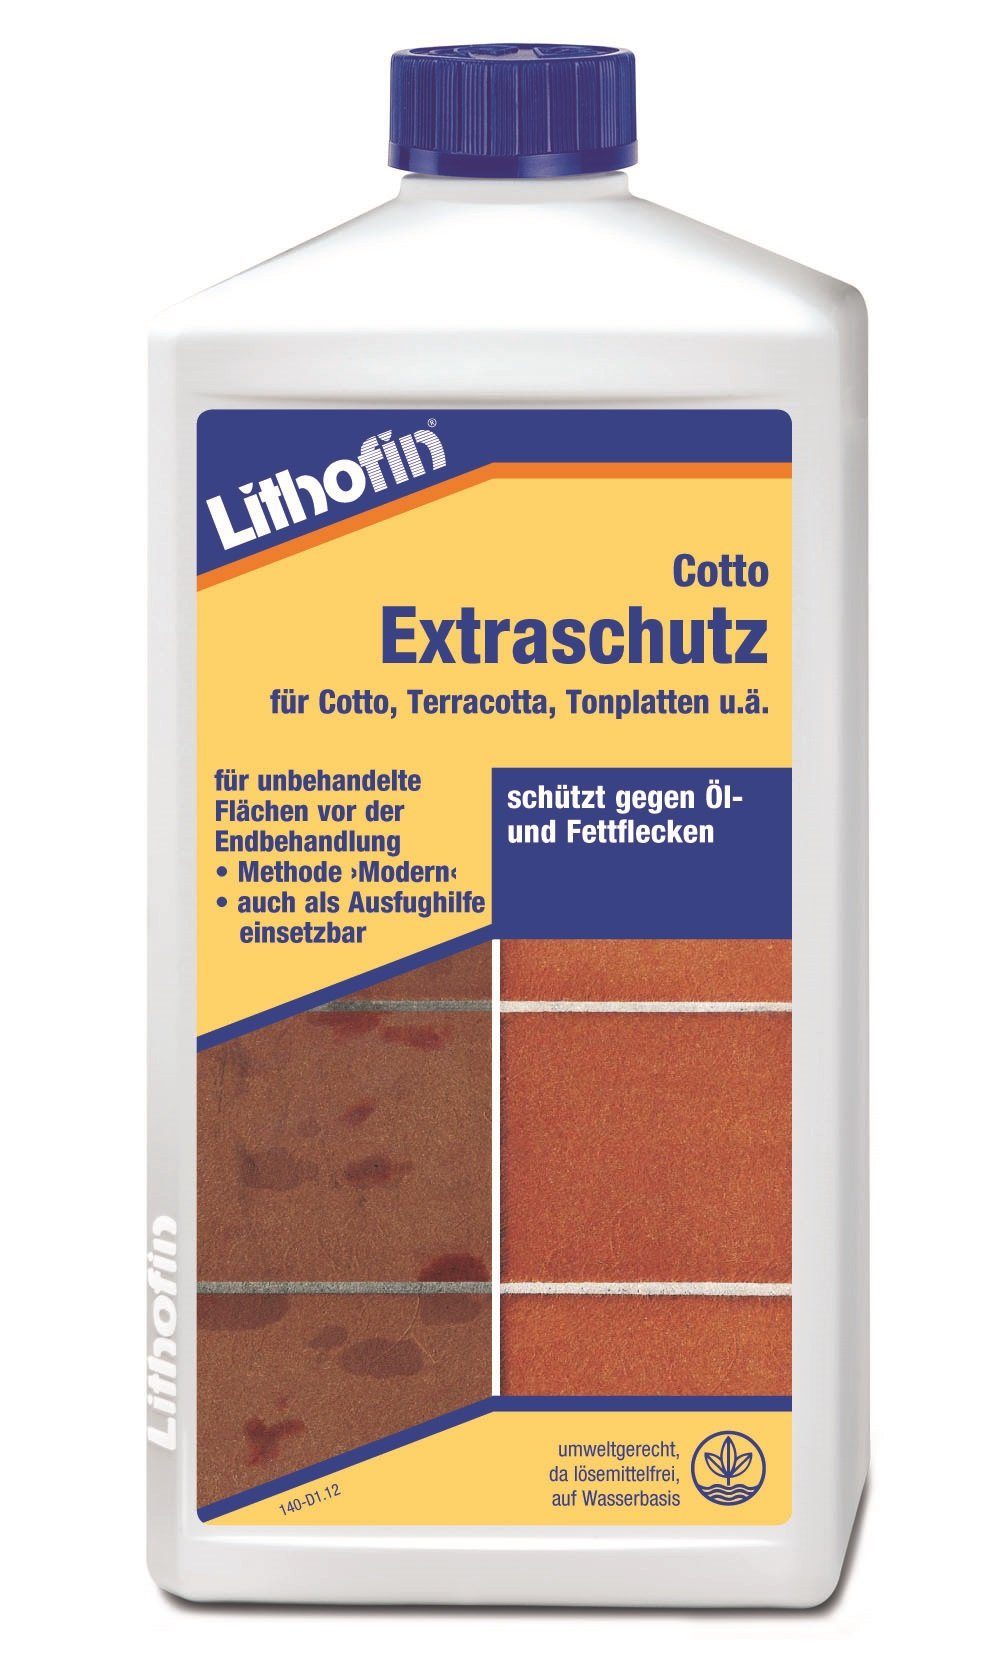 Naturstein-Reiniger LITHOFIN Lithofin Extraschutz, Cotto 1Ltr